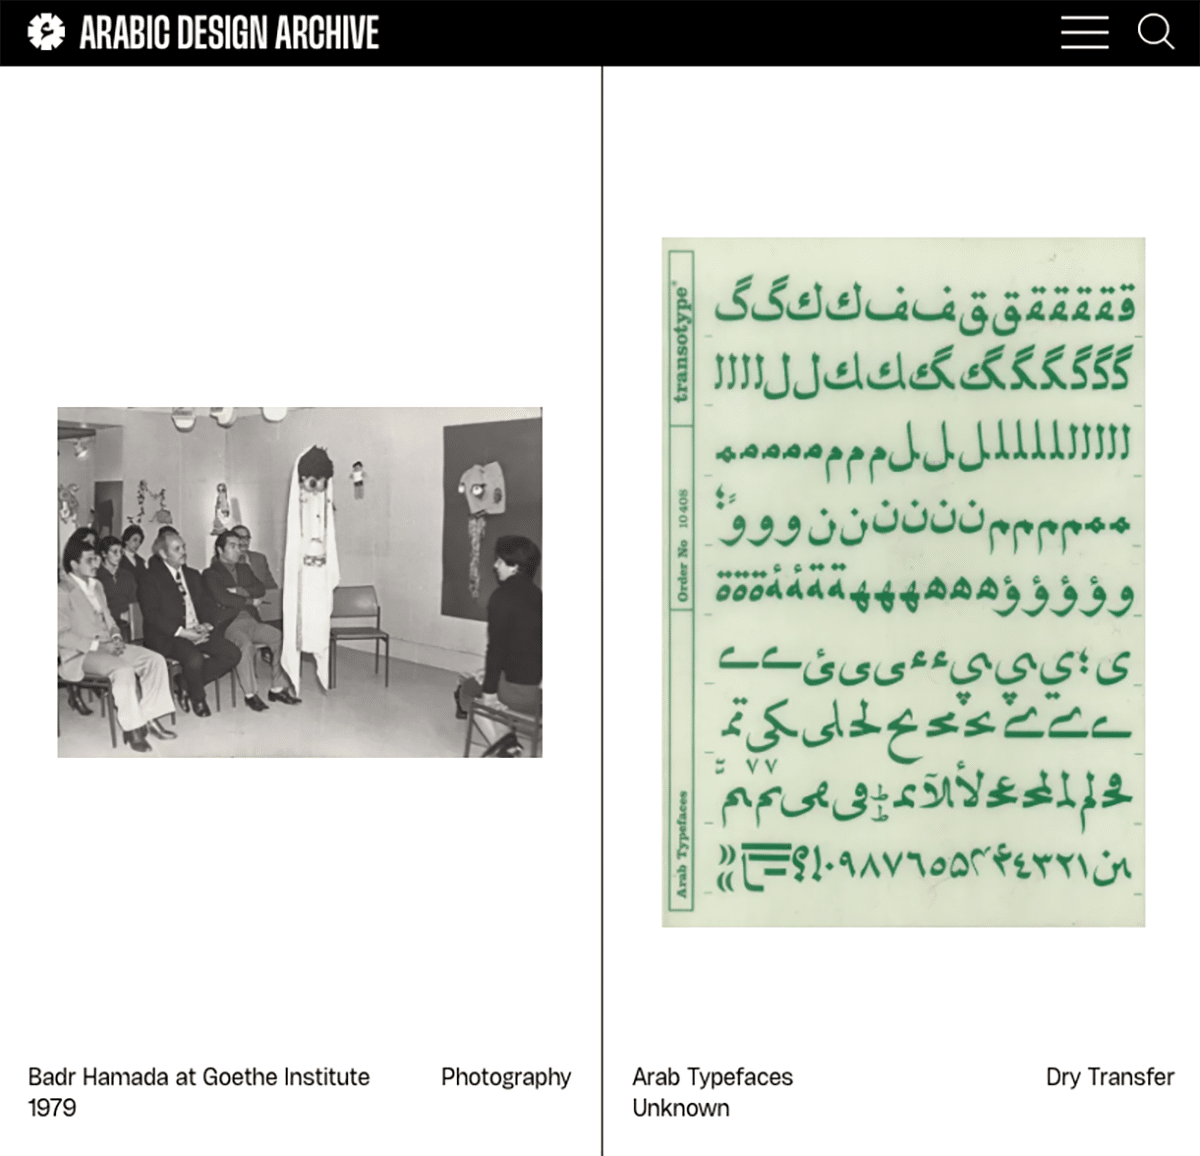 Zwei Bilder: links ein schwarz-weiß Foto. Rechts ein grünliches Papier mit arabischen Schriftzeichen